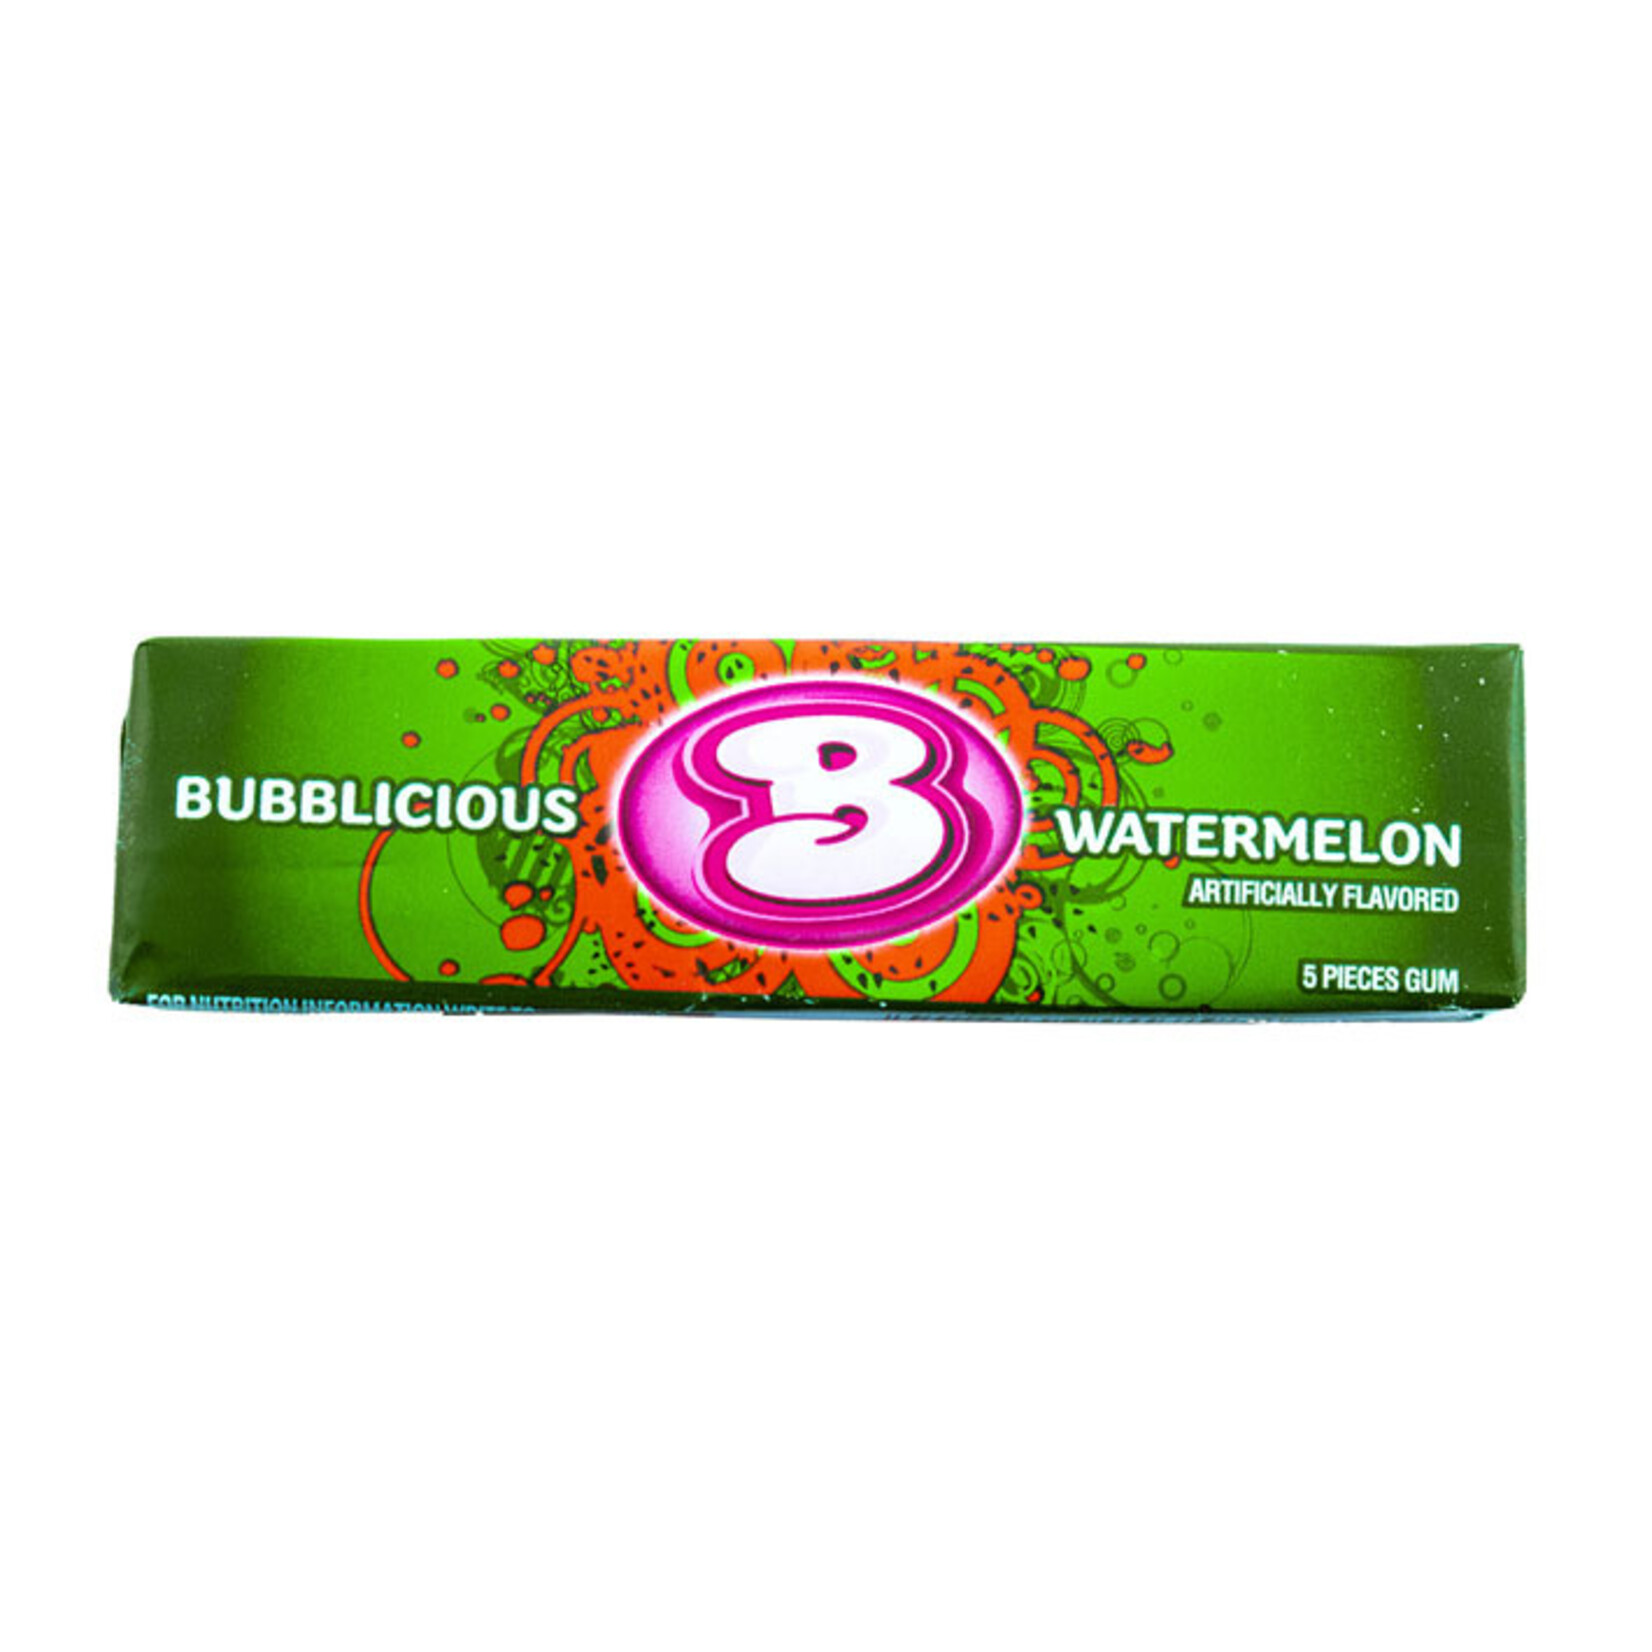 Bubblicious watermelon